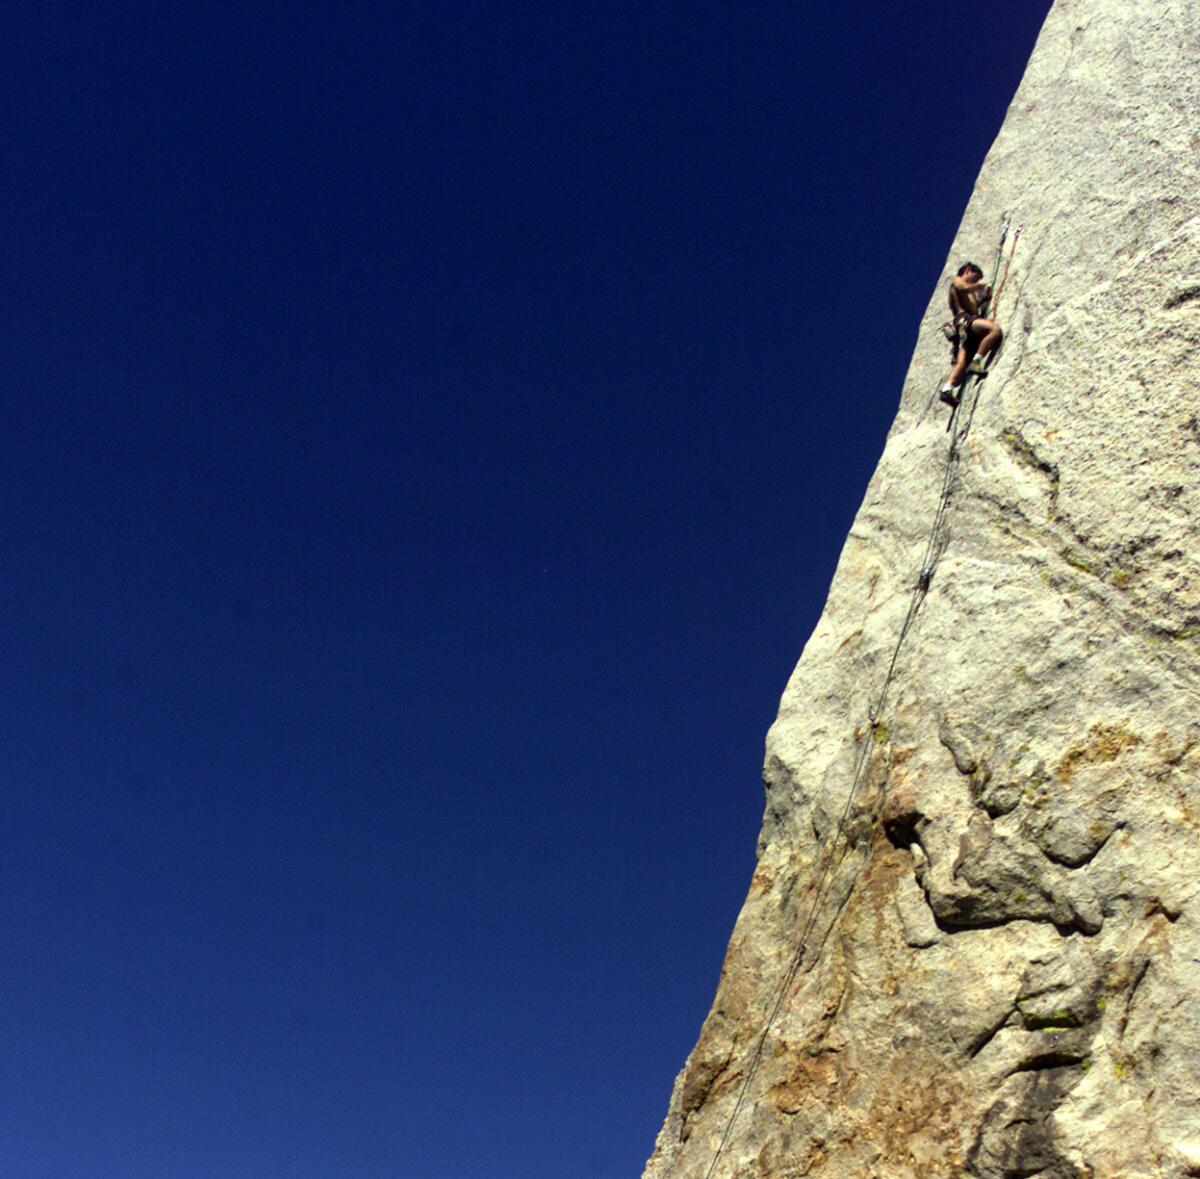 A man climbs Tahquitz Rock